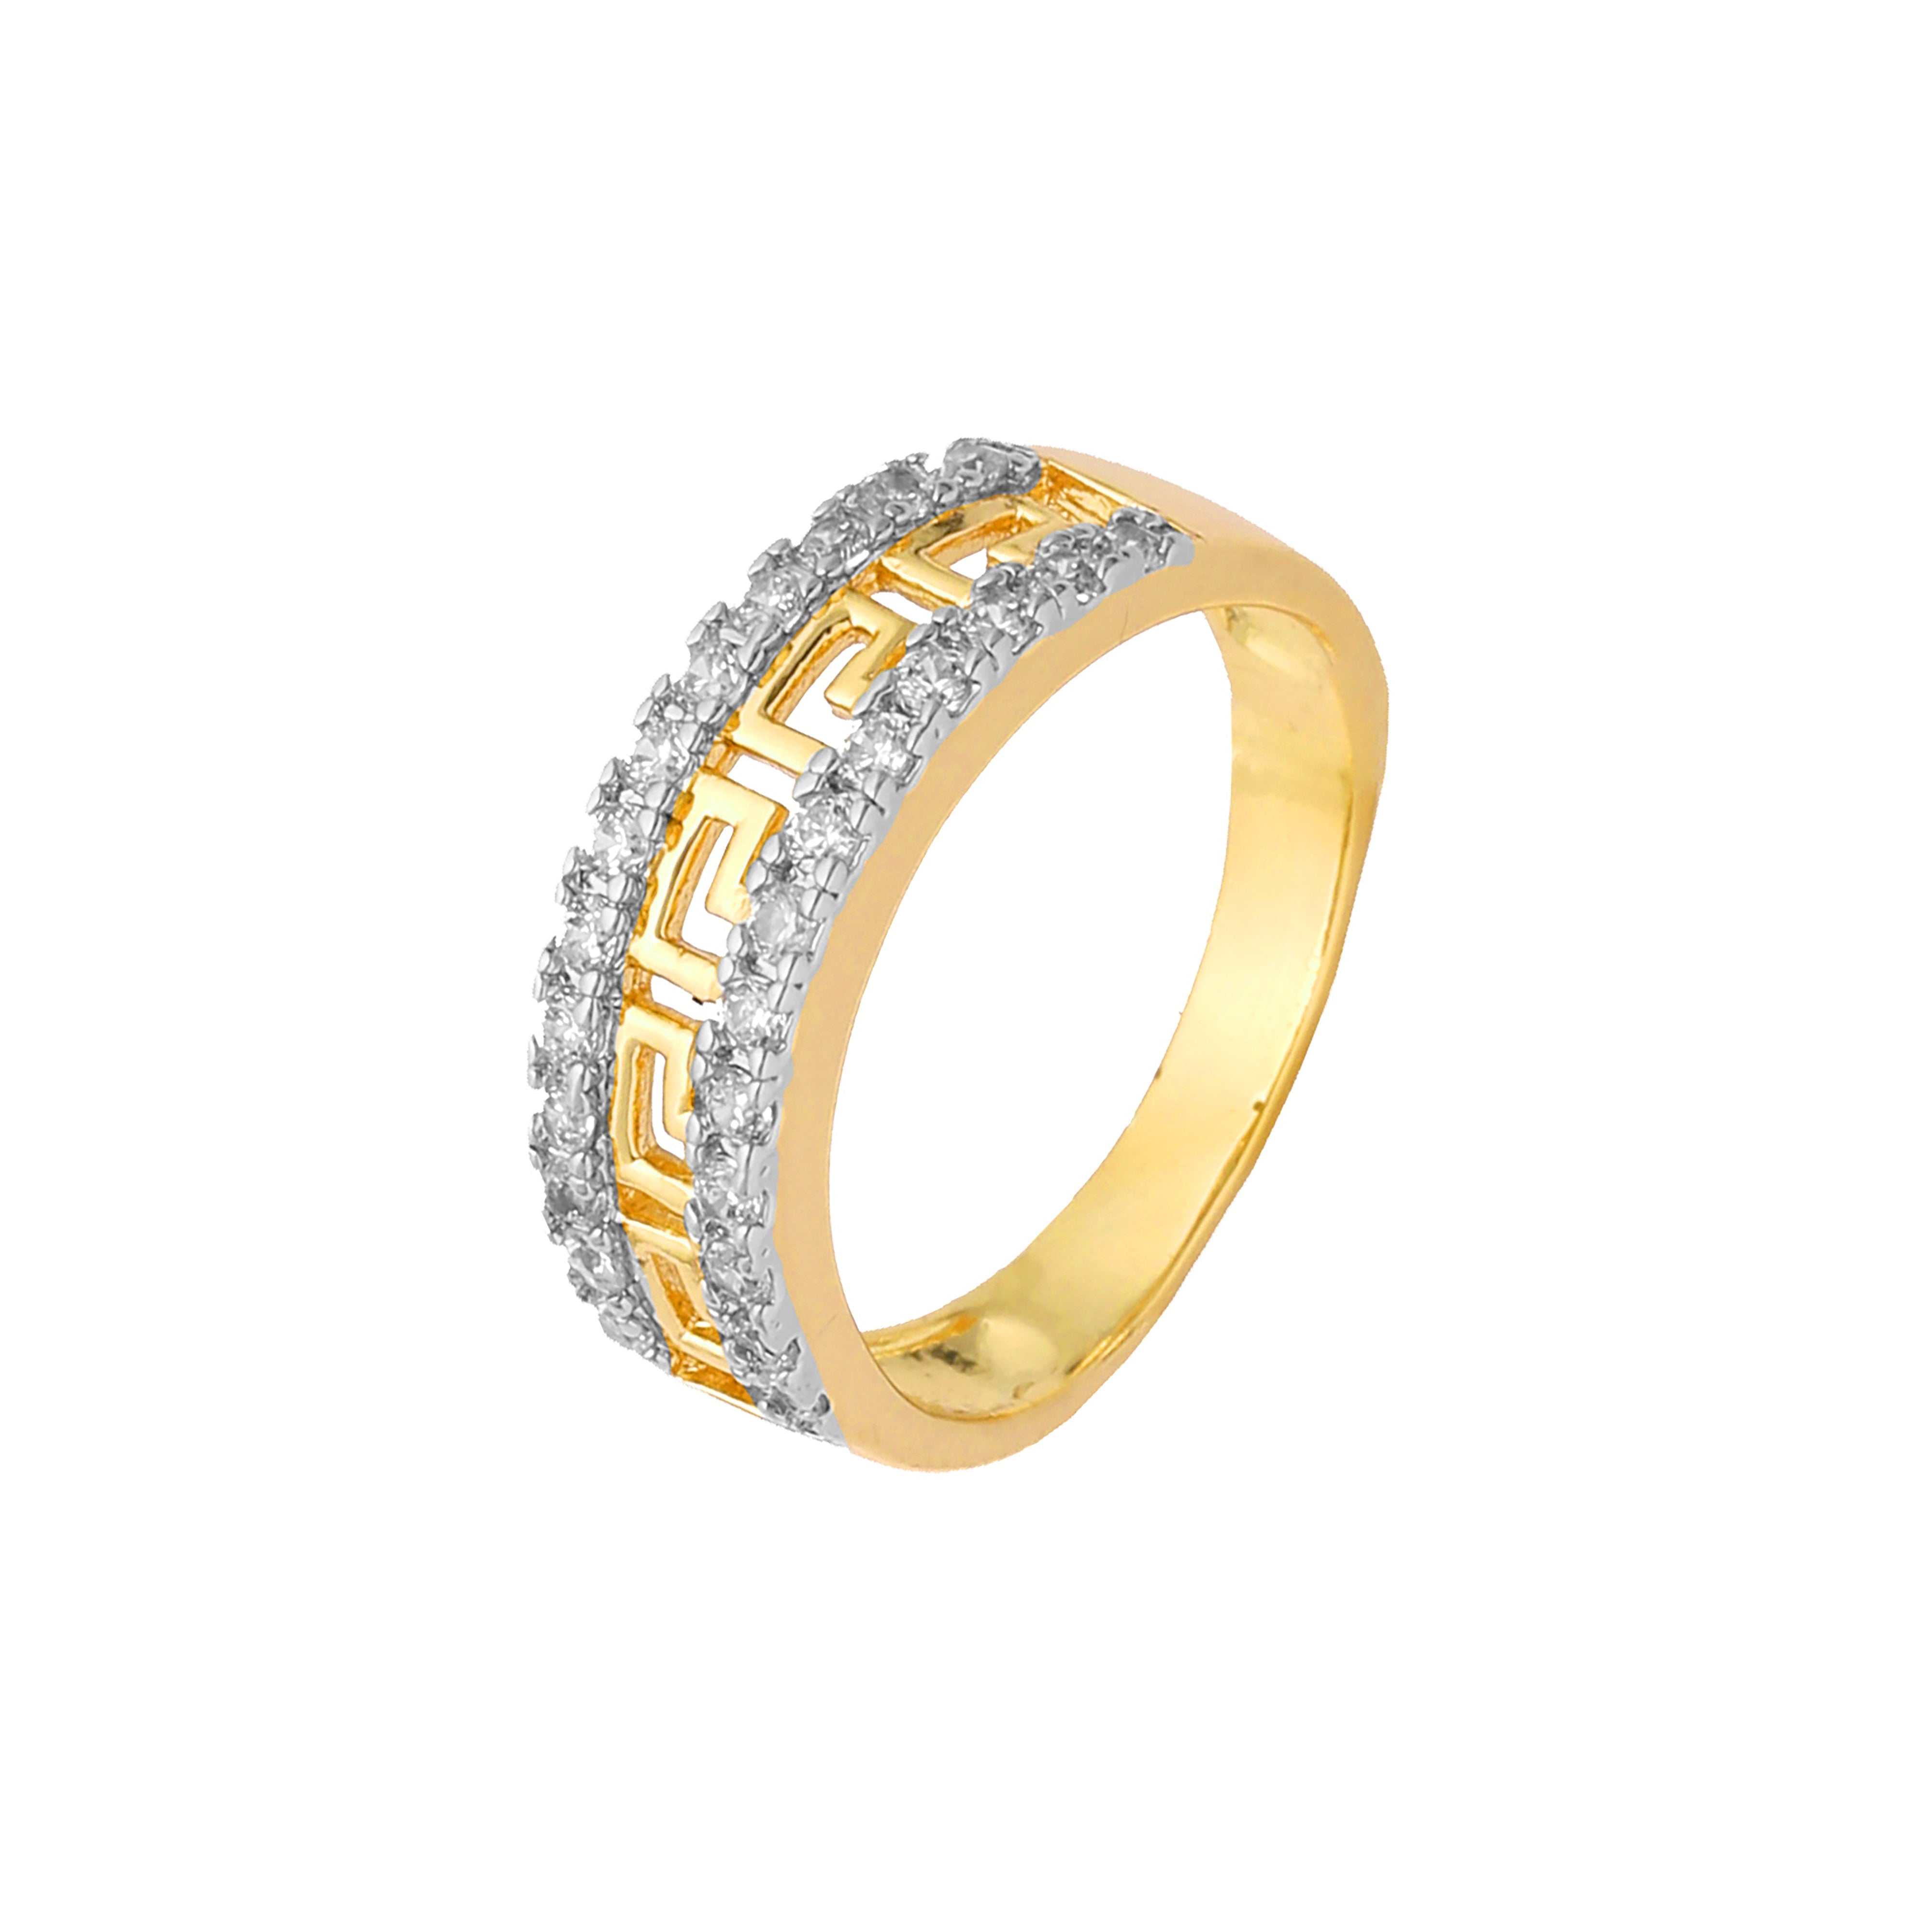 Греческие кольца-меандры для ключей из 18-каратного золота, белого золота, Жёлтое золото 585 пробы, Красное золото 585 пробы, двухцветного покрытия